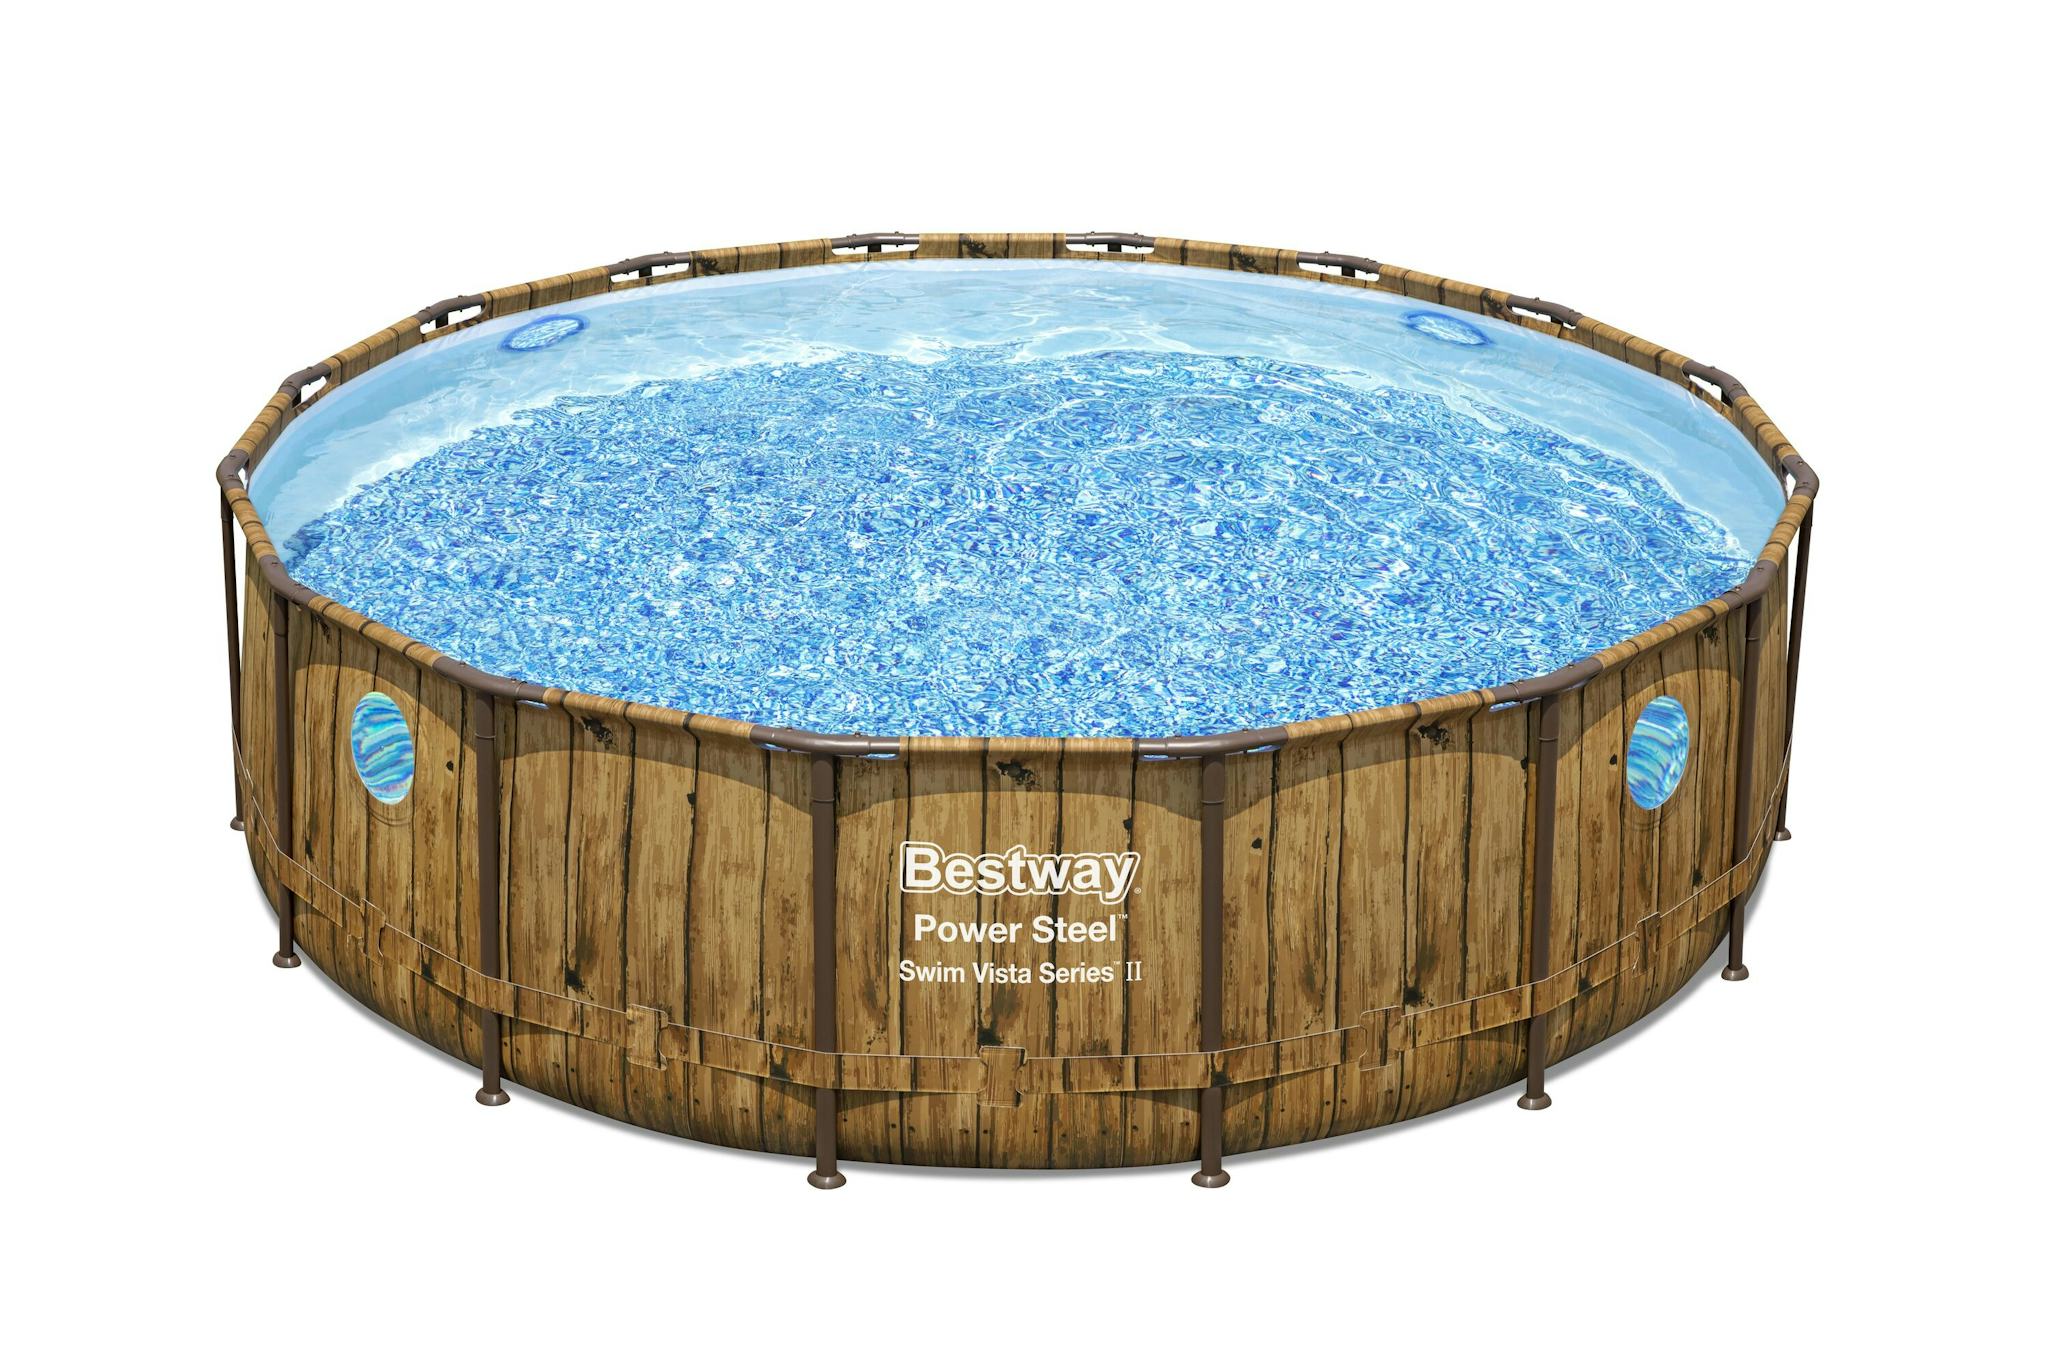 Piscine fuori terra Set piscina fuori terra rotonda Power Steel Swim Vista da 488x122 cm effetto legno chiaro Bestway 2